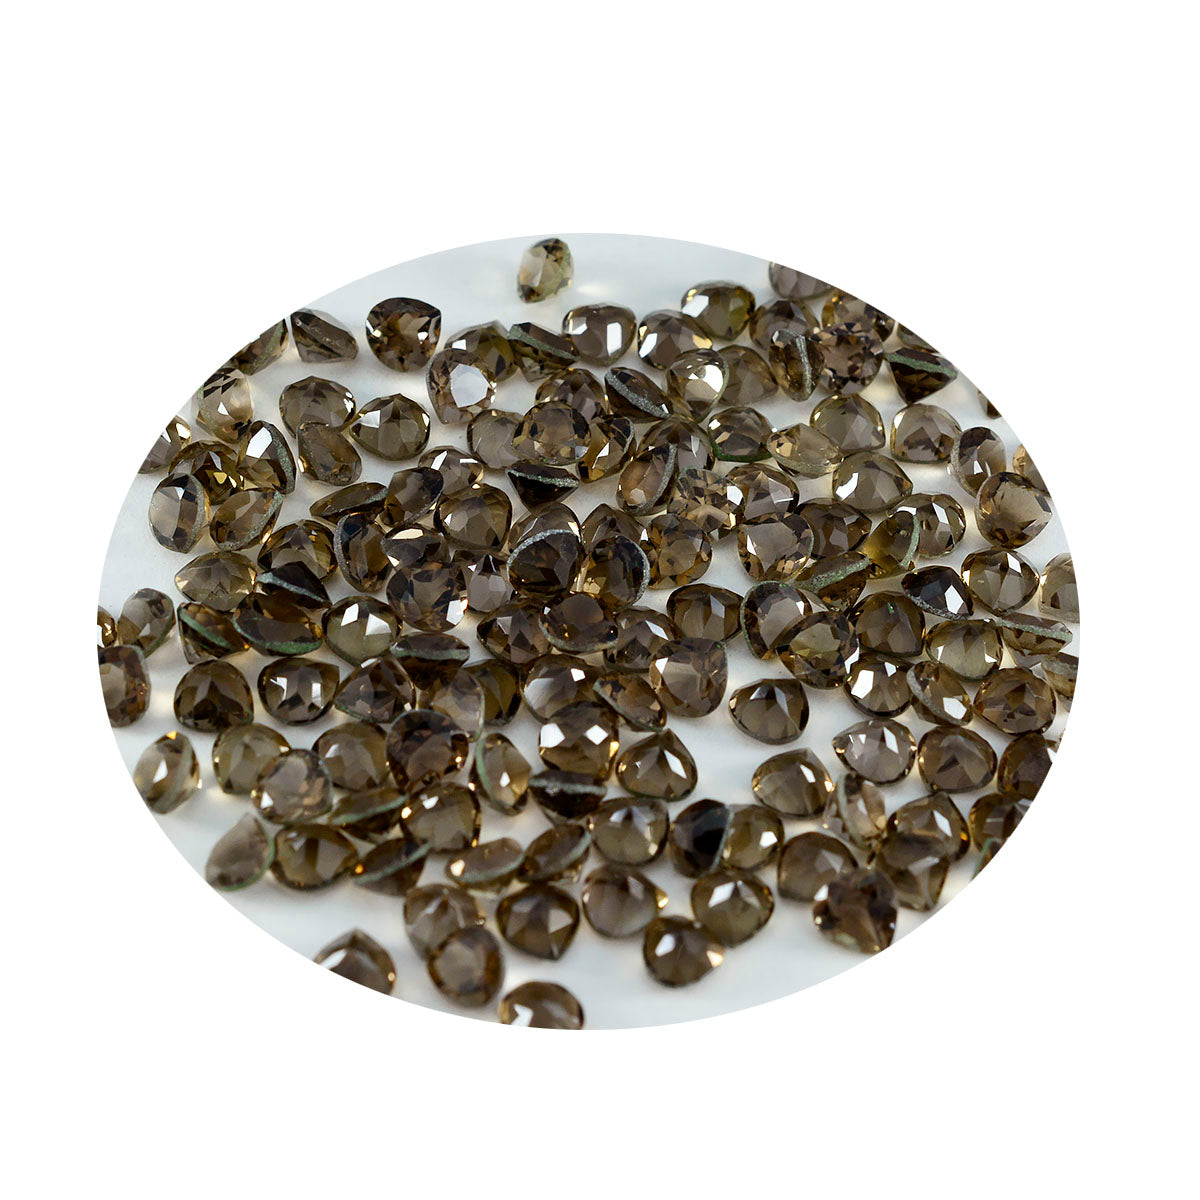 riyogems 1 шт. натуральный коричневый дымчатый кварц ограненный 4x4 мм в форме сердца драгоценные камни удивительного качества